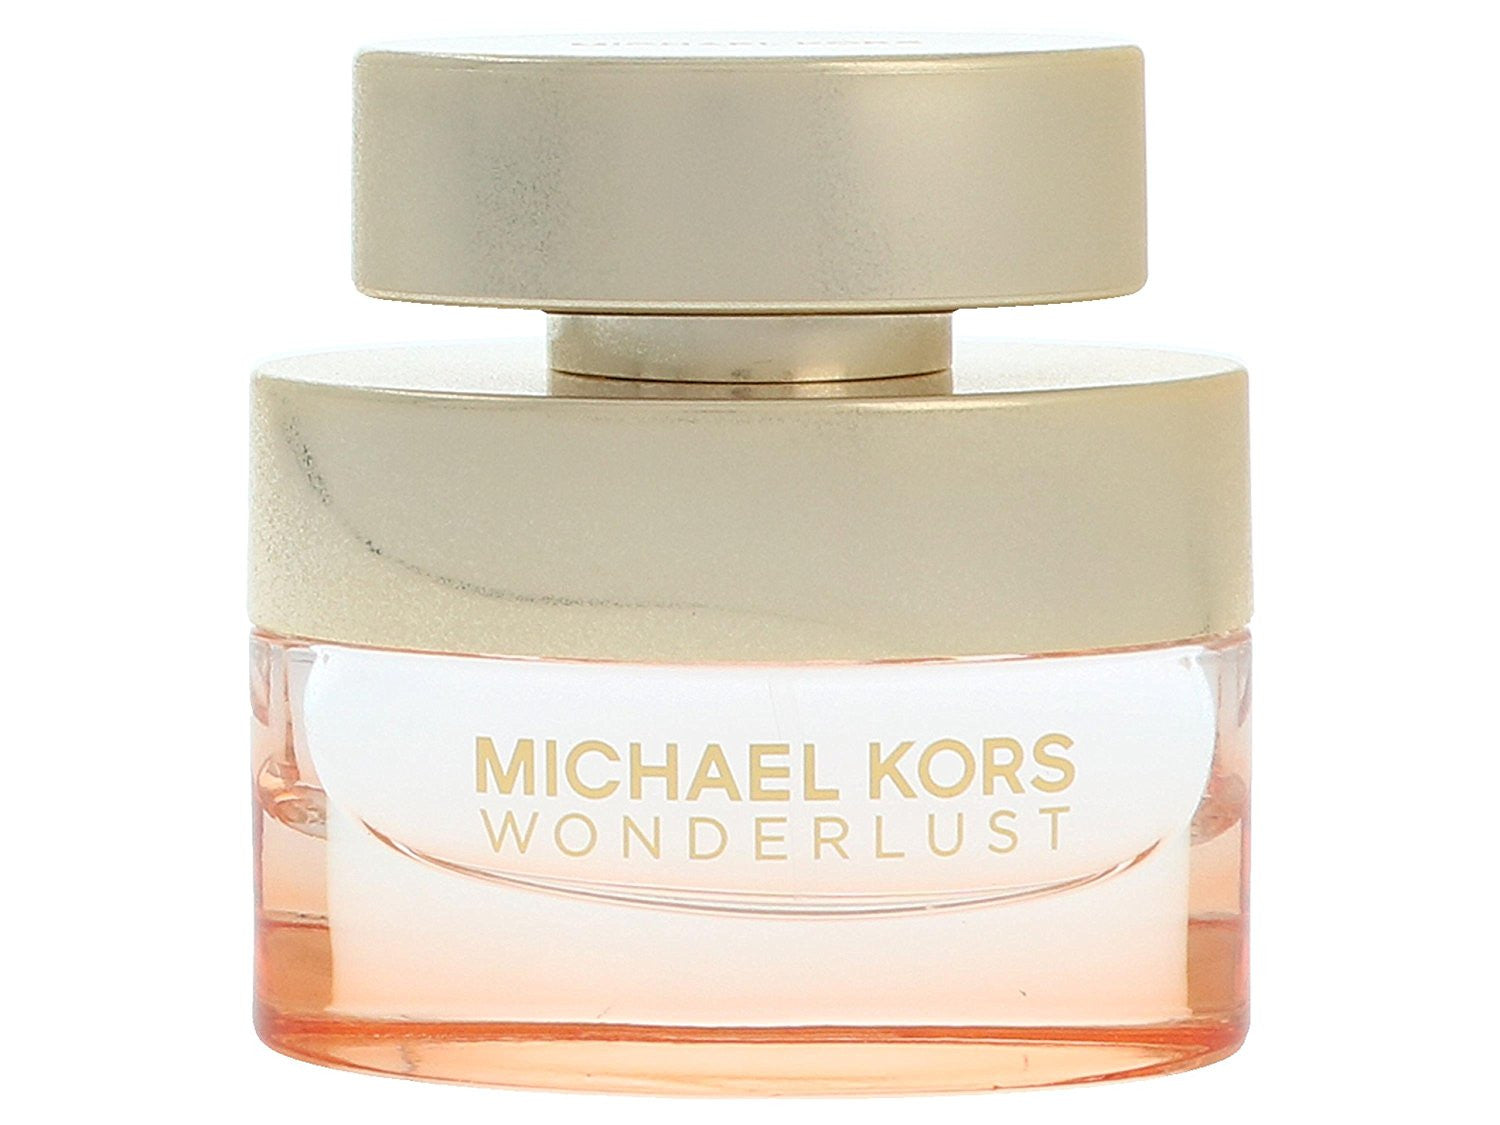 Michael Kors Wonderlust Eau De Parfum 30ml - Look Incredible